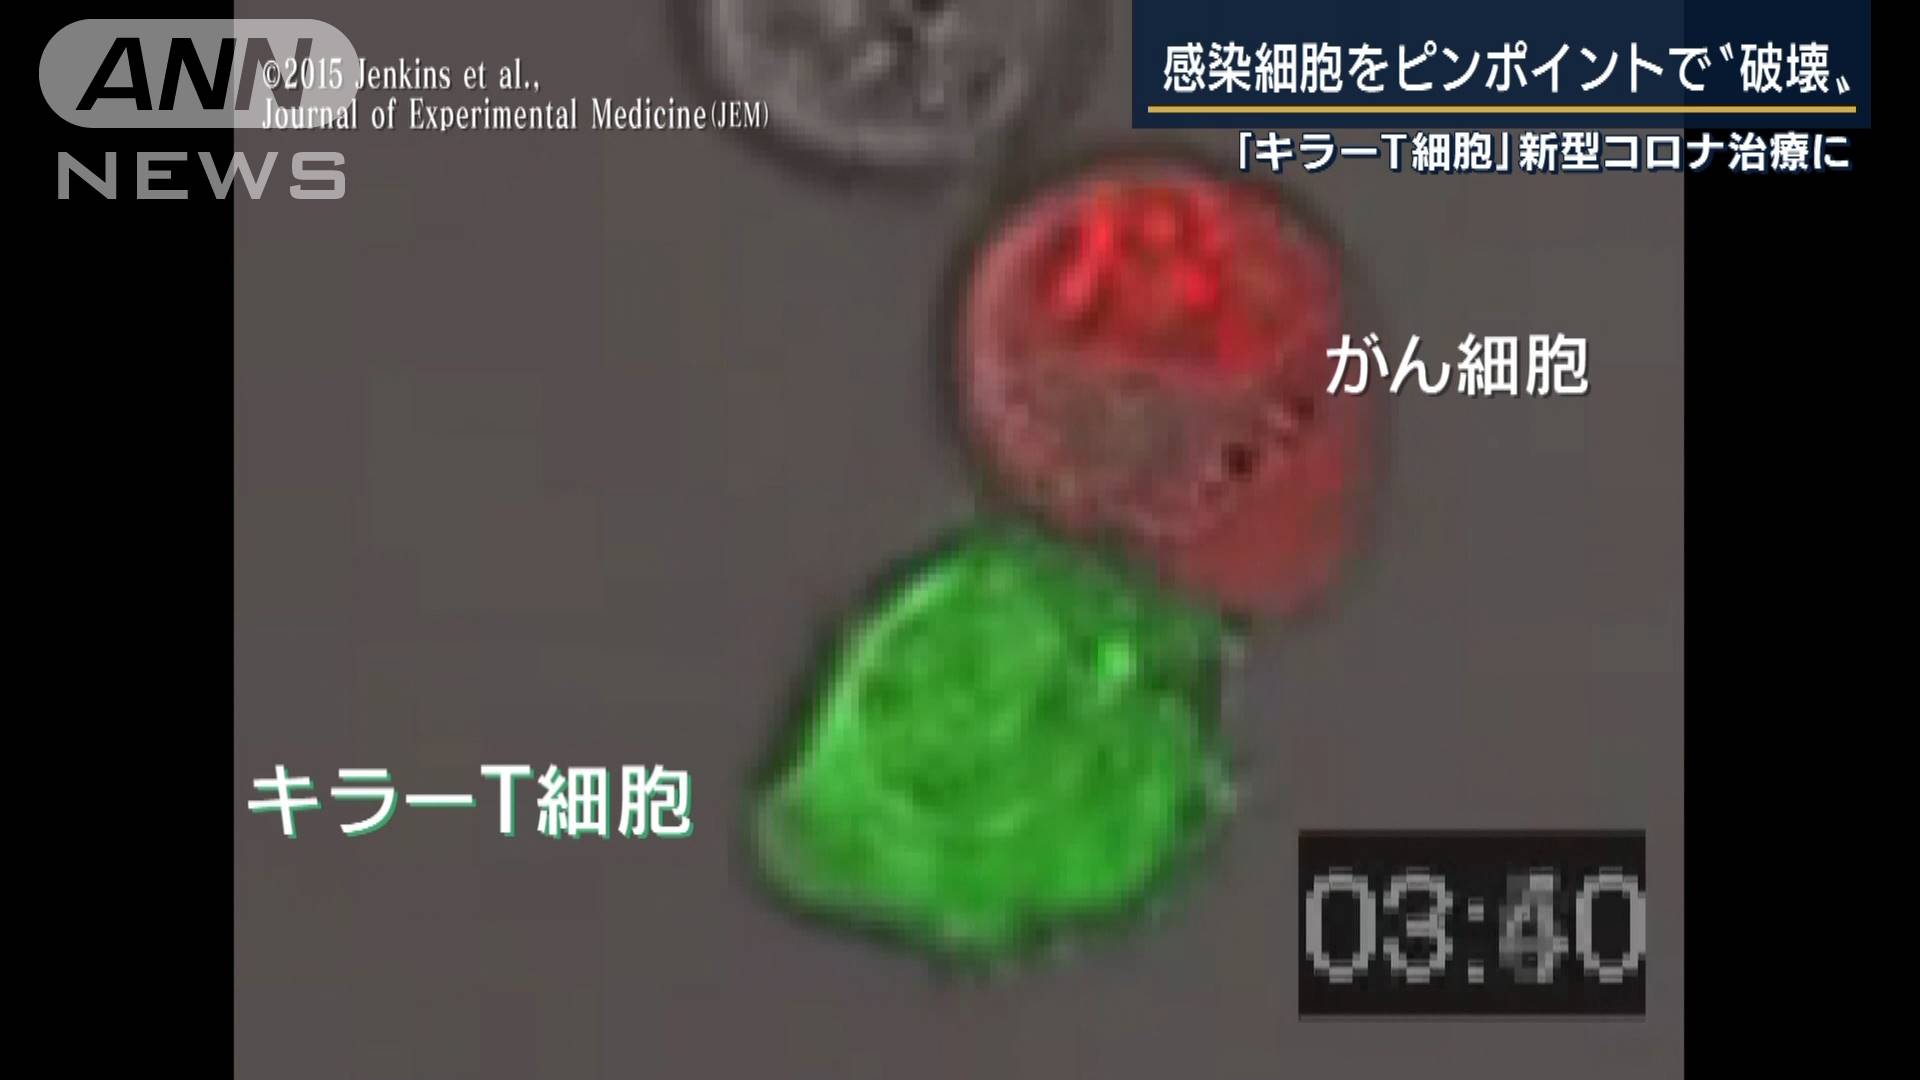 世界初 キラーt細胞でコロナ治療 キーマンに聞く テレ朝news テレビ朝日のニュースサイト